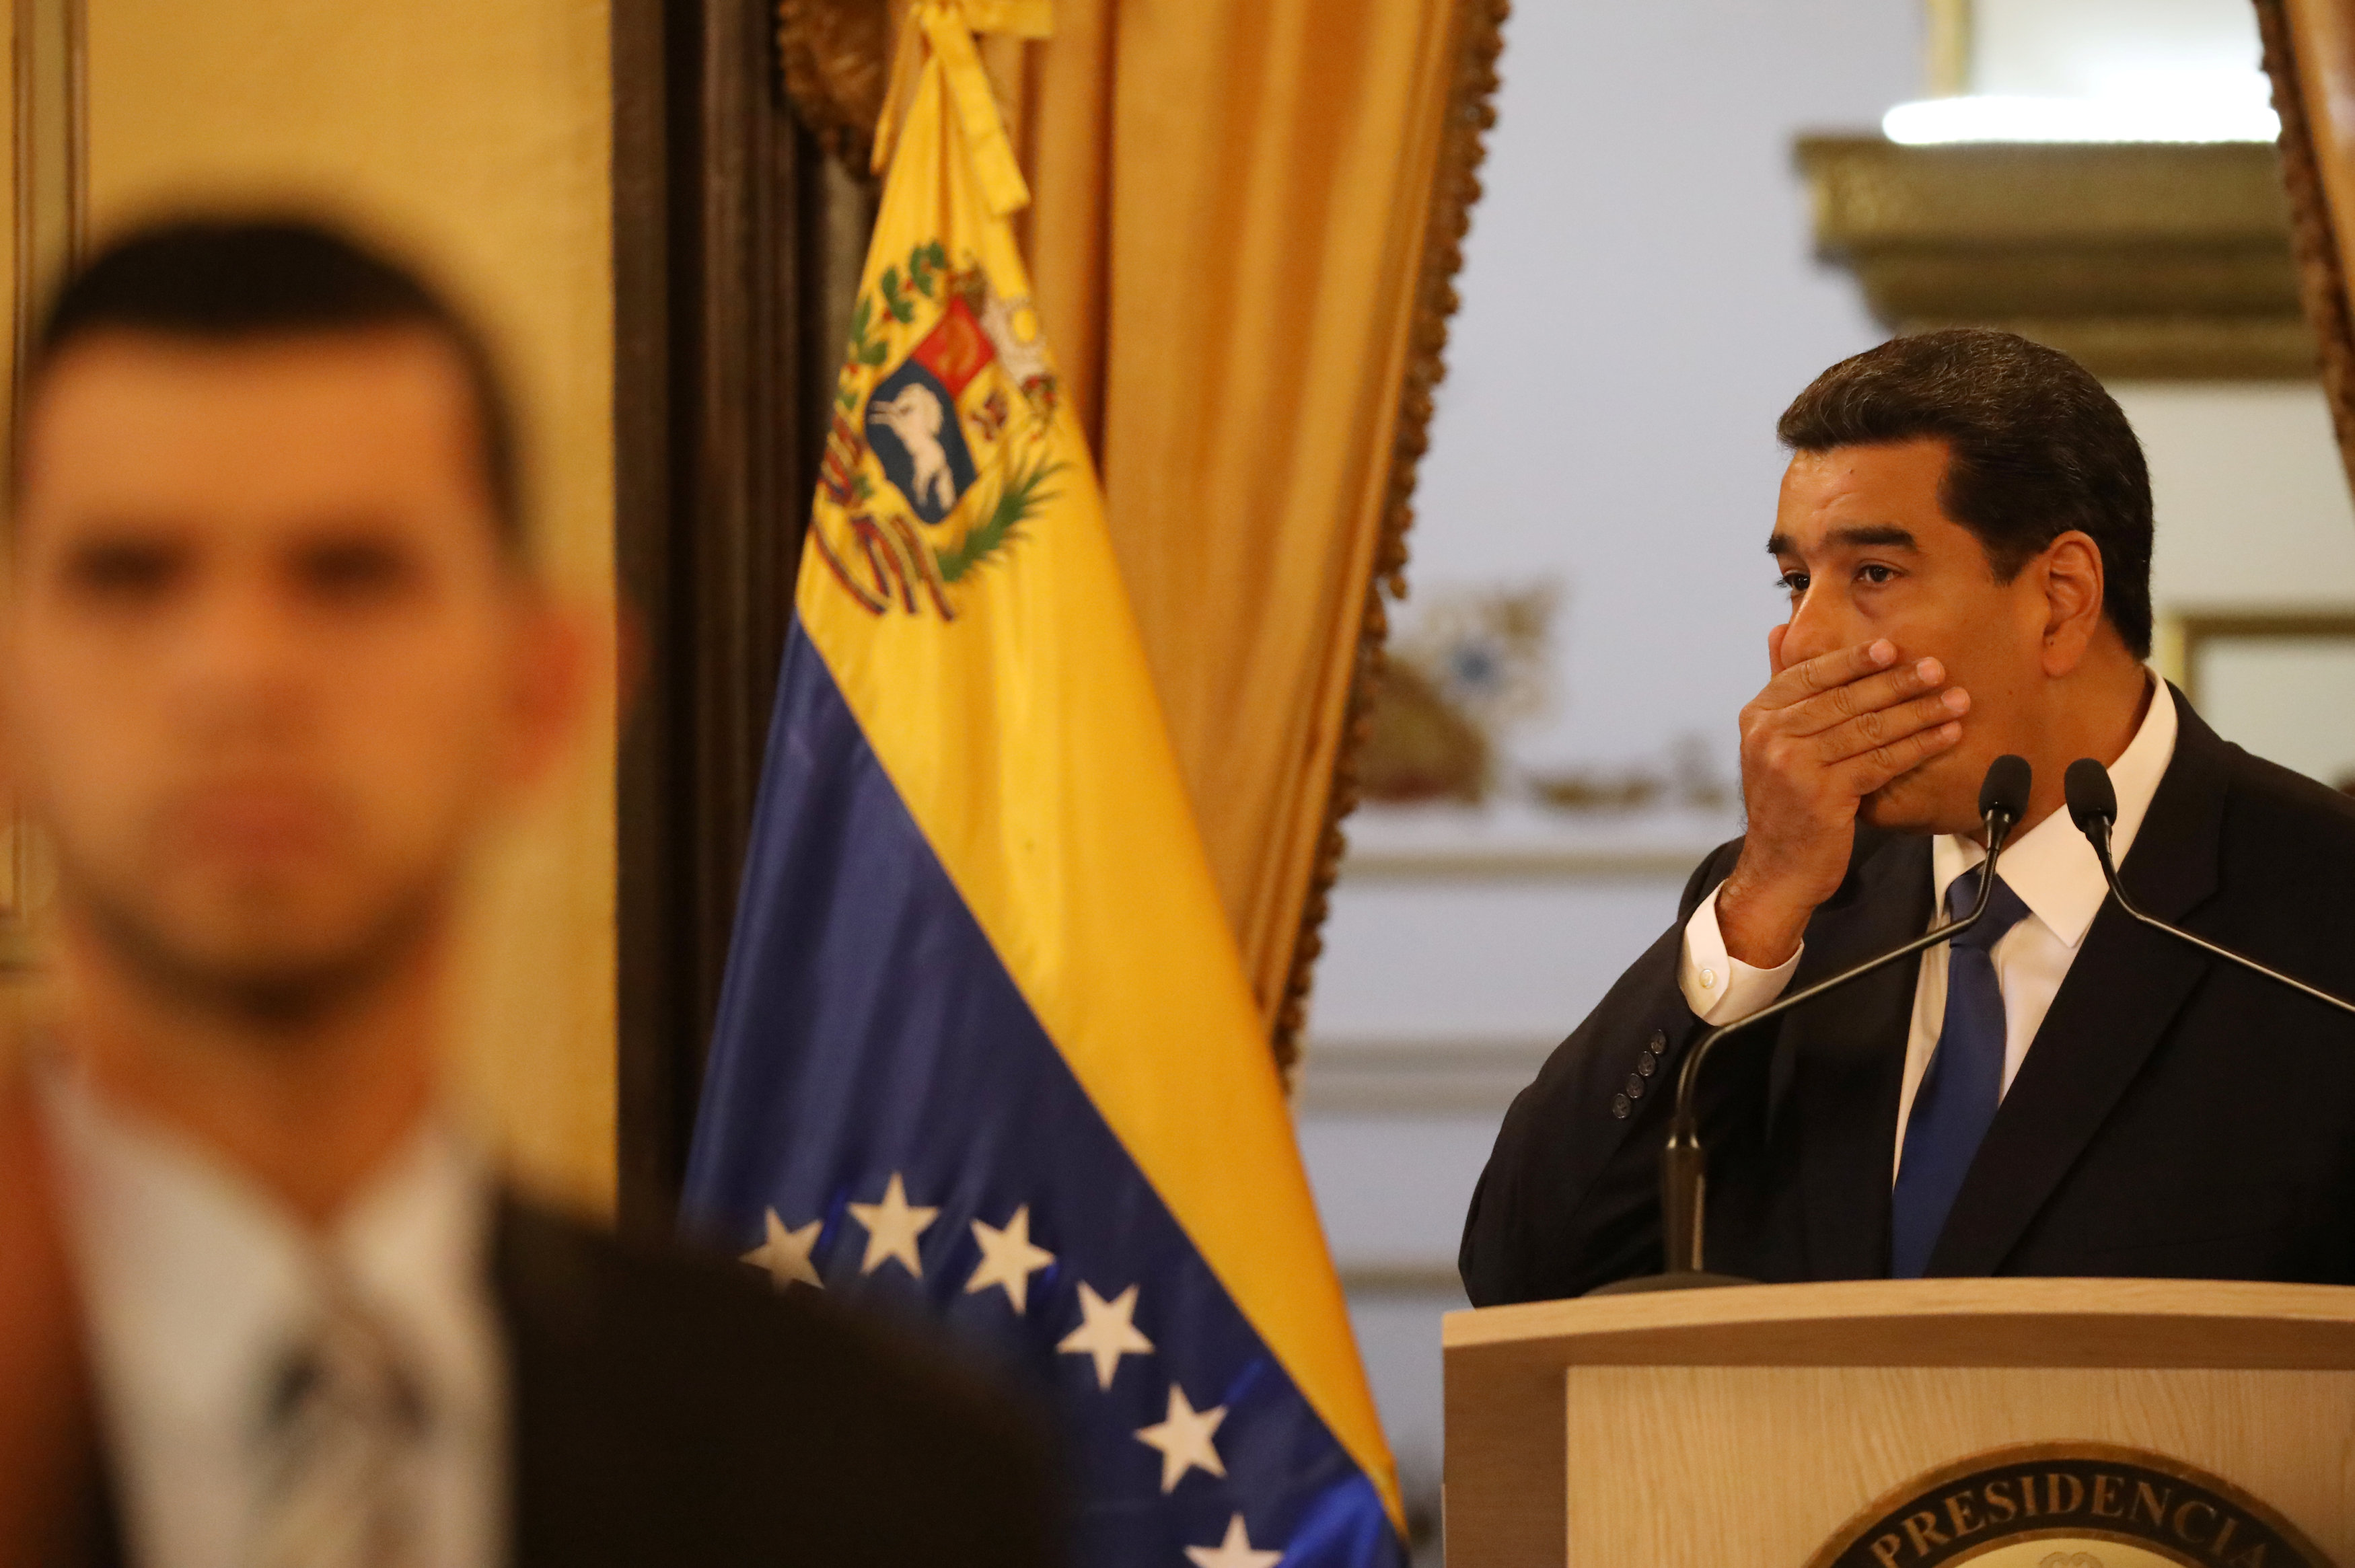 EEUU descartó negociación con el régimen, planean una “salida digna” para Maduro